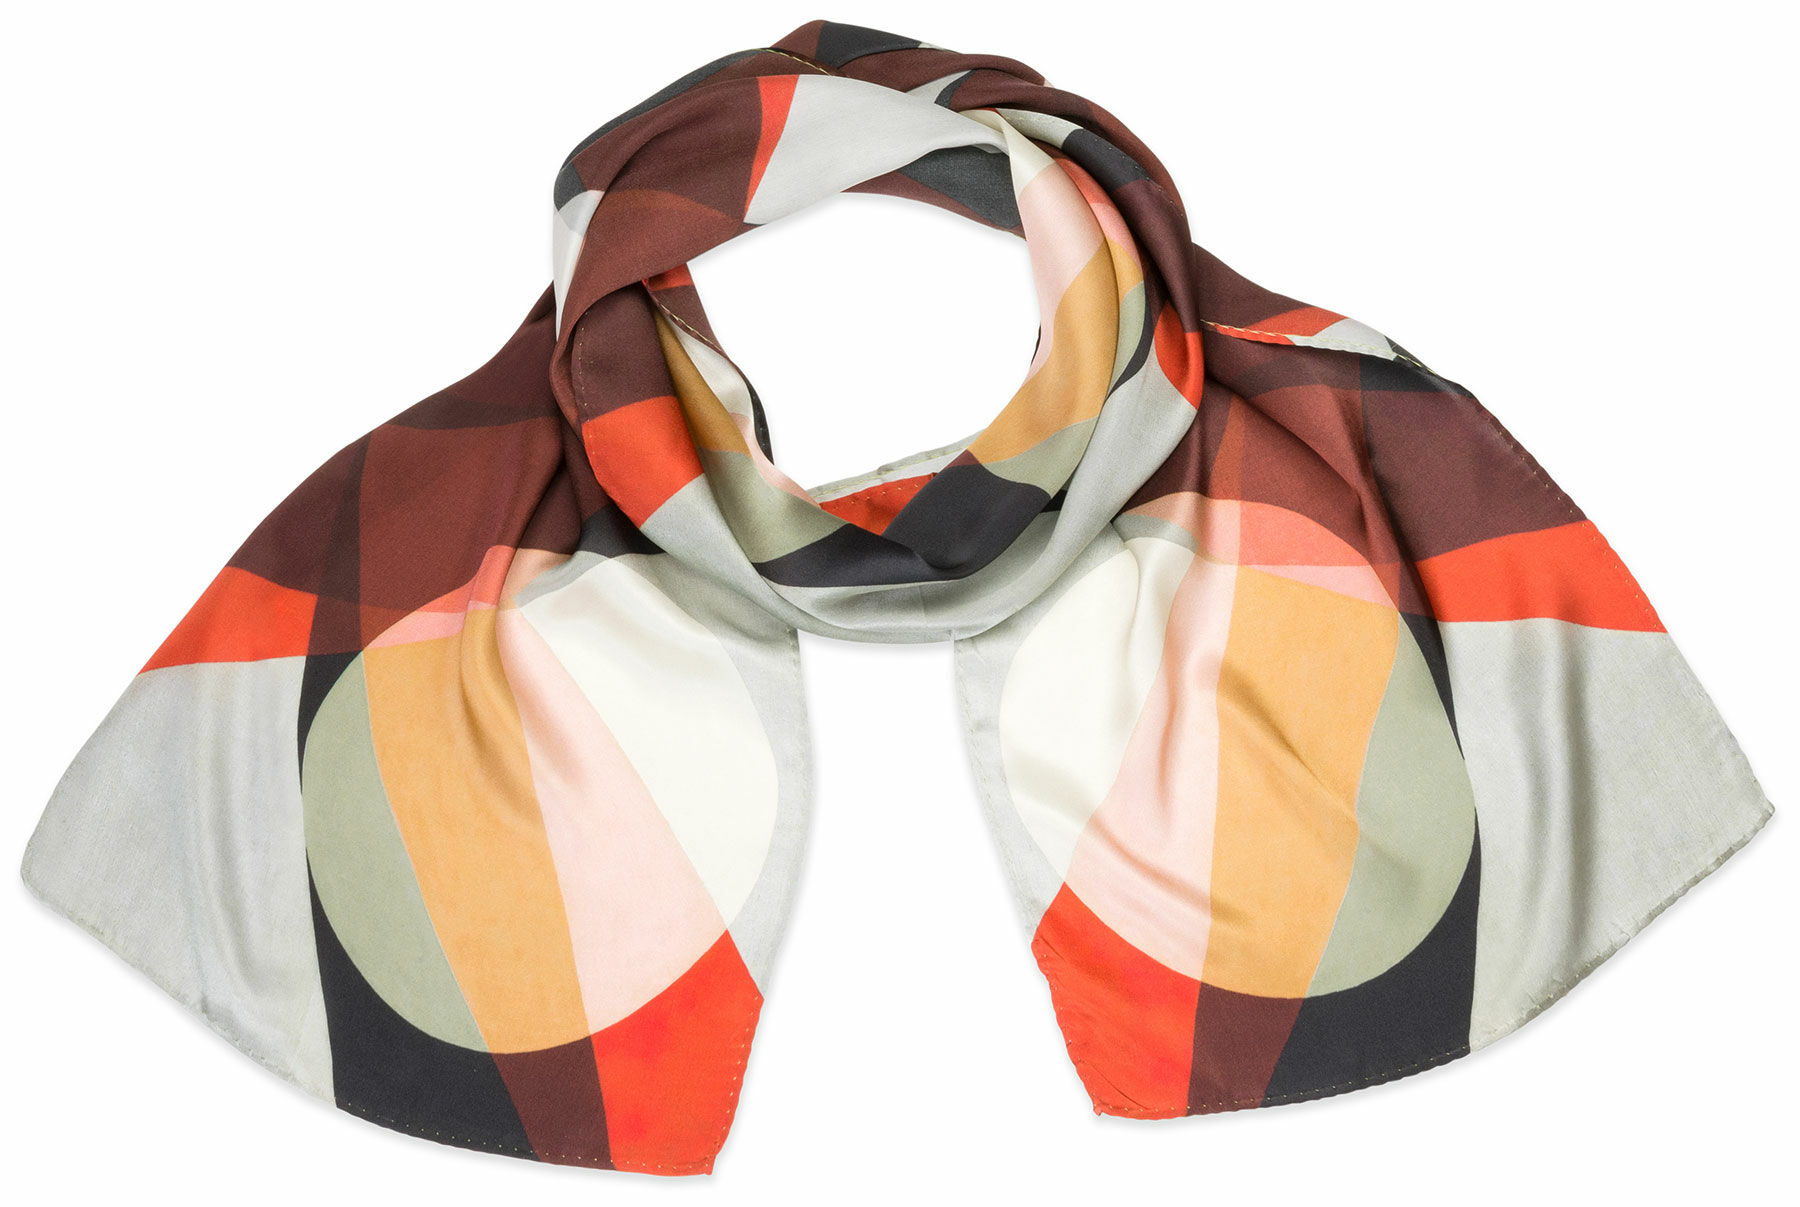 Silk scarf "A19" by László Moholy-Nagy